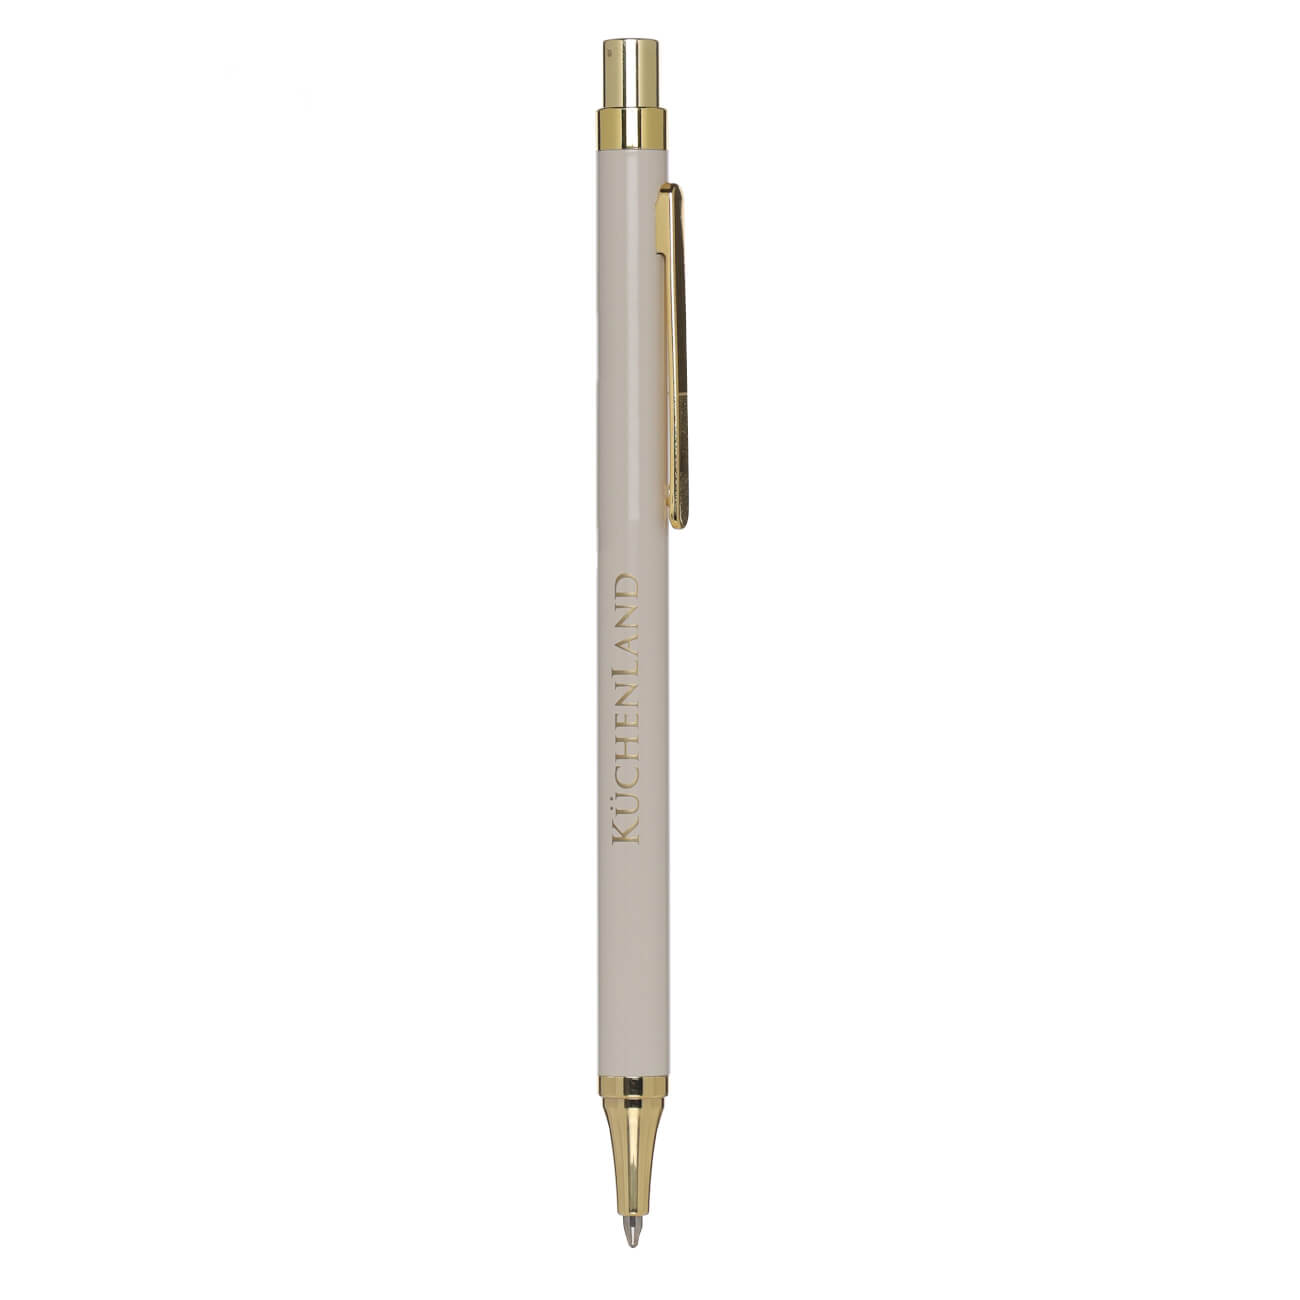 Ручка шариковая, 14 см, металл/пластик, бежевая, Eclipse brass ballpoint ручка